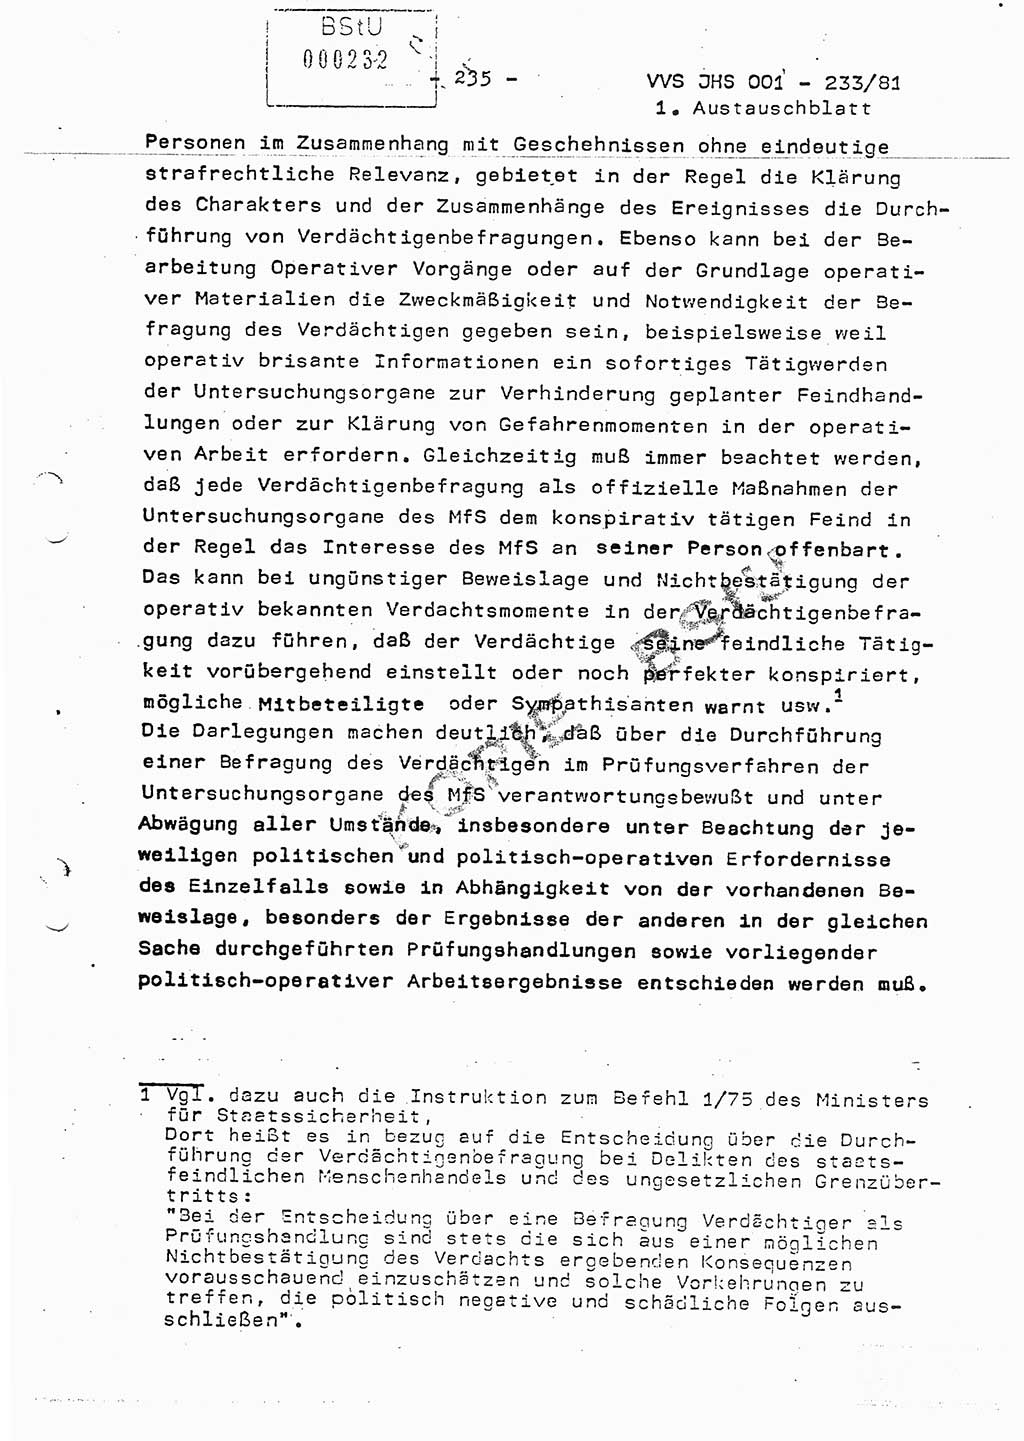 Dissertation Oberstleutnant Horst Zank (JHS), Oberstleutnant Dr. Karl-Heinz Knoblauch (JHS), Oberstleutnant Gustav-Adolf Kowalewski (HA Ⅸ), Oberstleutnant Wolfgang Plötner (HA Ⅸ), Ministerium für Staatssicherheit (MfS) [Deutsche Demokratische Republik (DDR)], Juristische Hochschule (JHS), Vertrauliche Verschlußsache (VVS) o001-233/81, Potsdam 1981, Blatt 235 (Diss. MfS DDR JHS VVS o001-233/81 1981, Bl. 235)